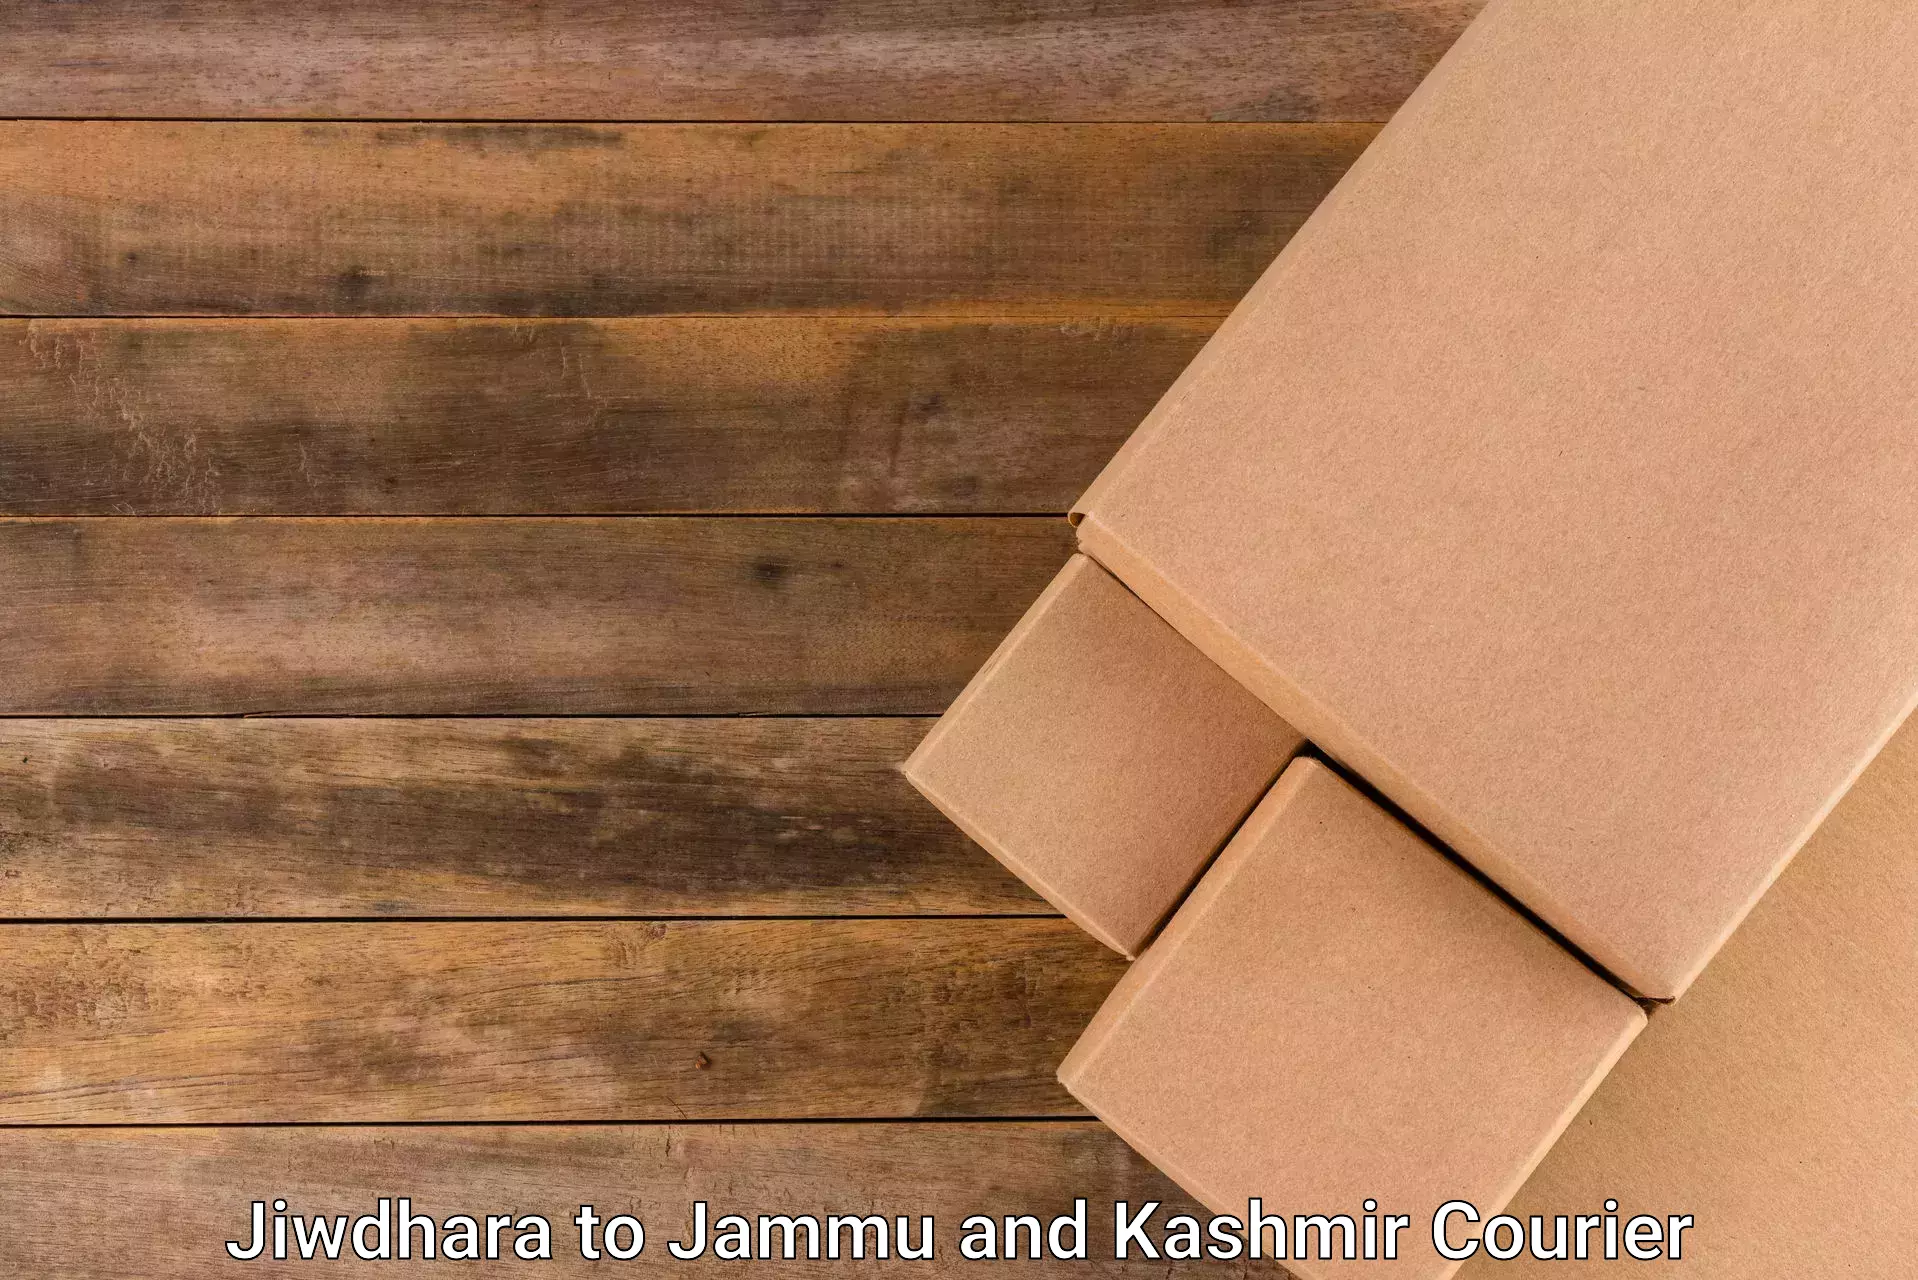 Sustainable shipping practices Jiwdhara to Ramban